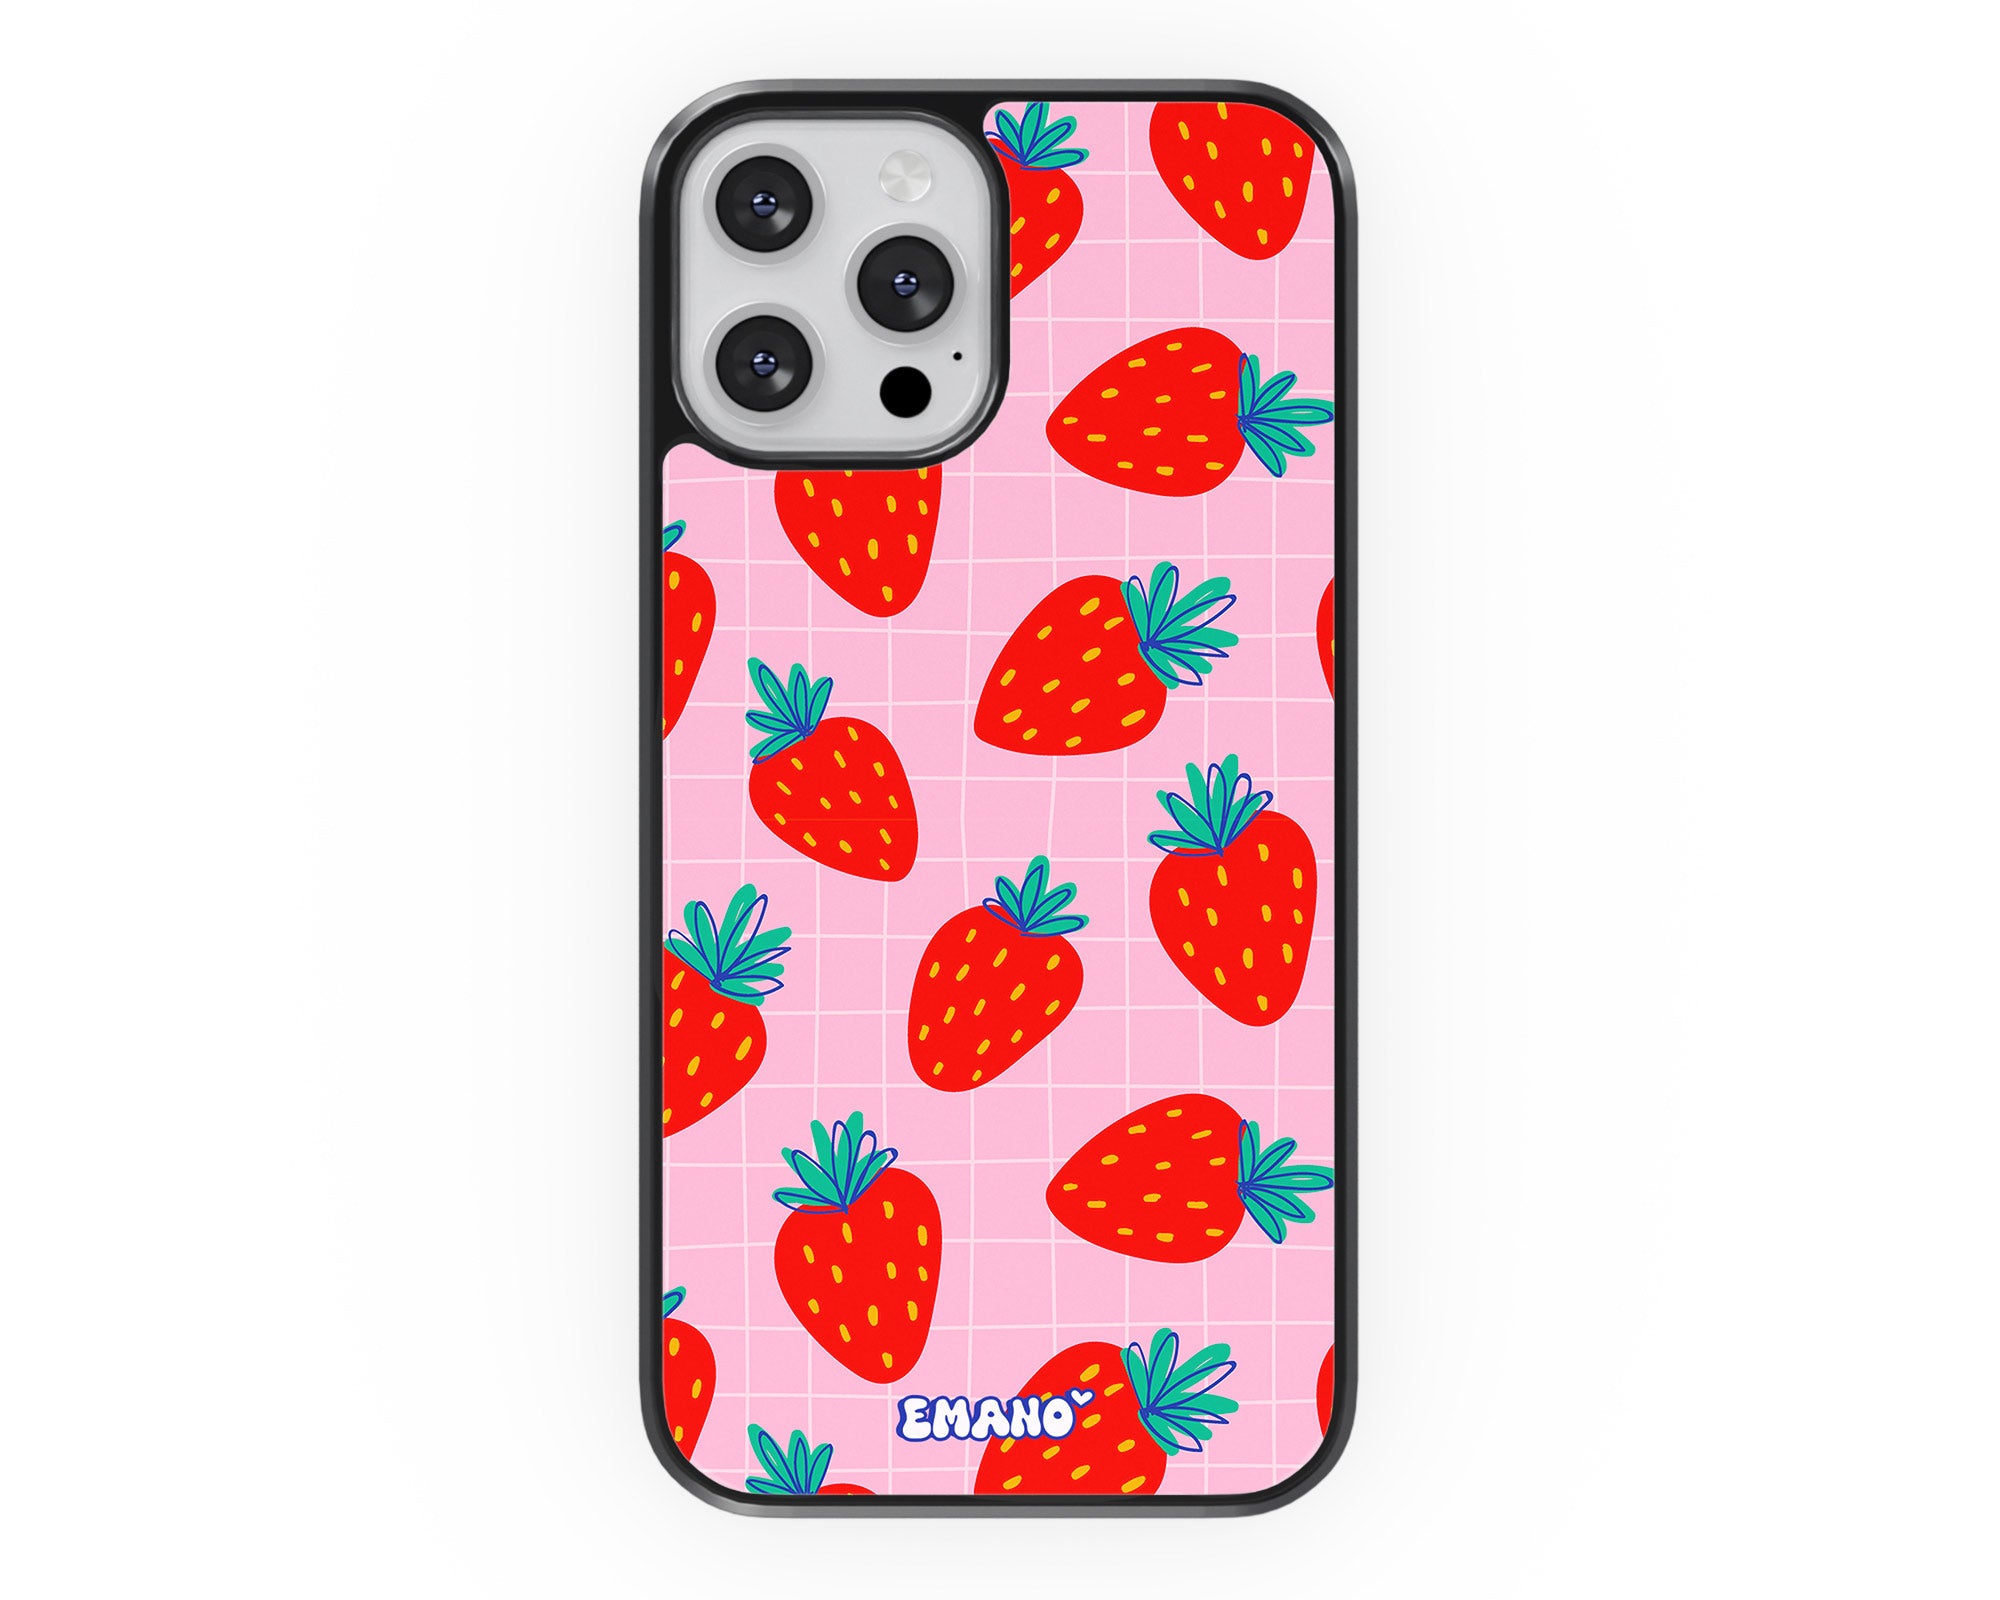 Rafraîchissez votre téléphone avec notre coque Emano aux délicieuses fraises ! 🍓📱 #StyleFruité